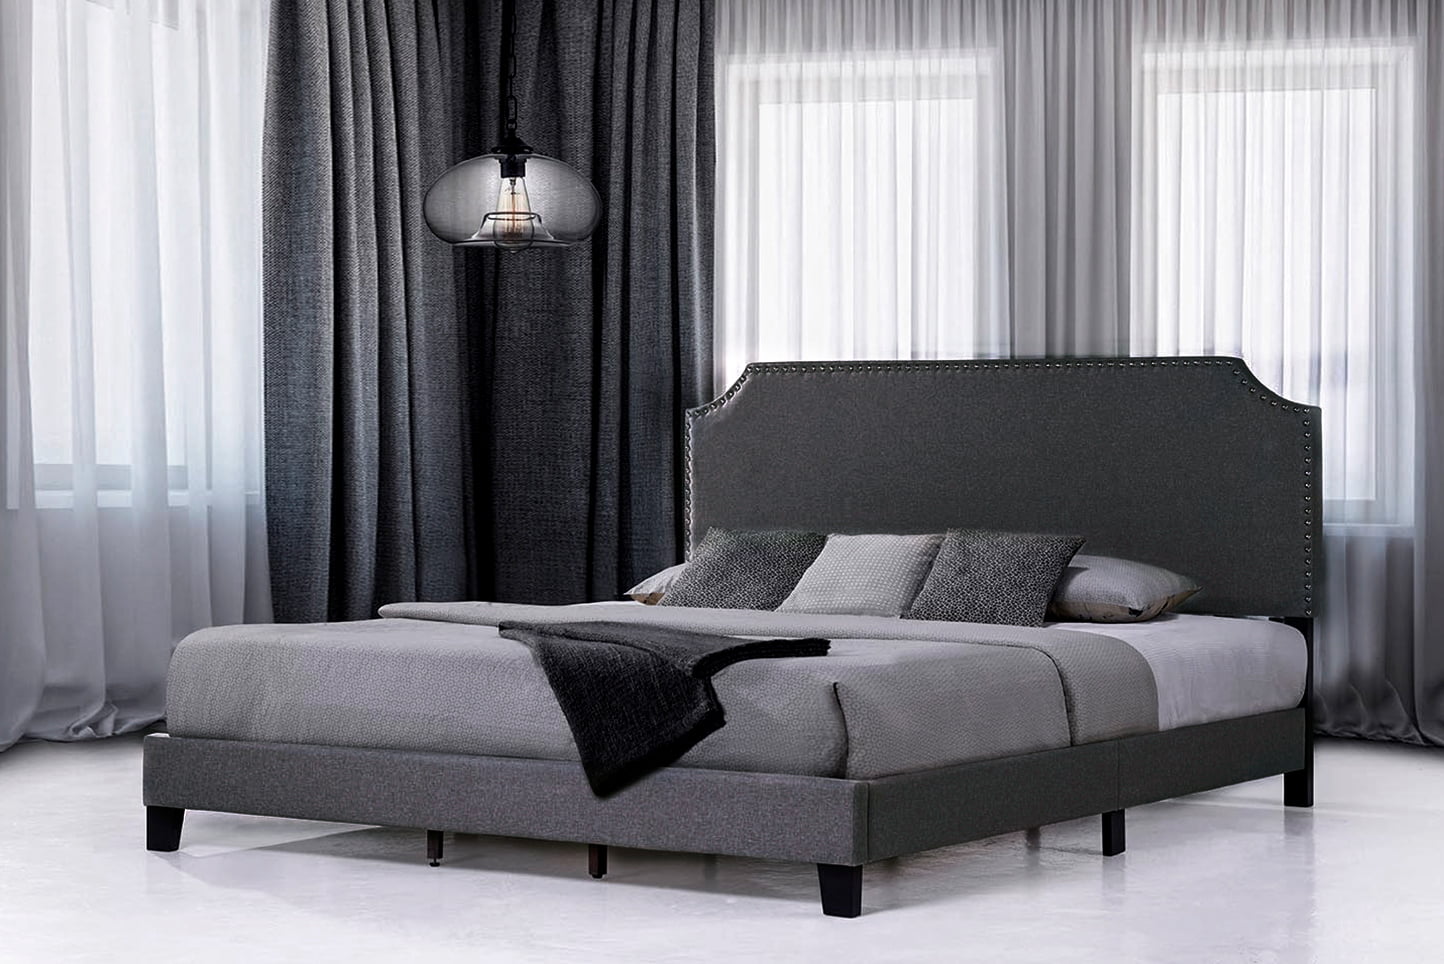 SAIBAIYEE Upholstered Platform Bed Frame with Light Grey 